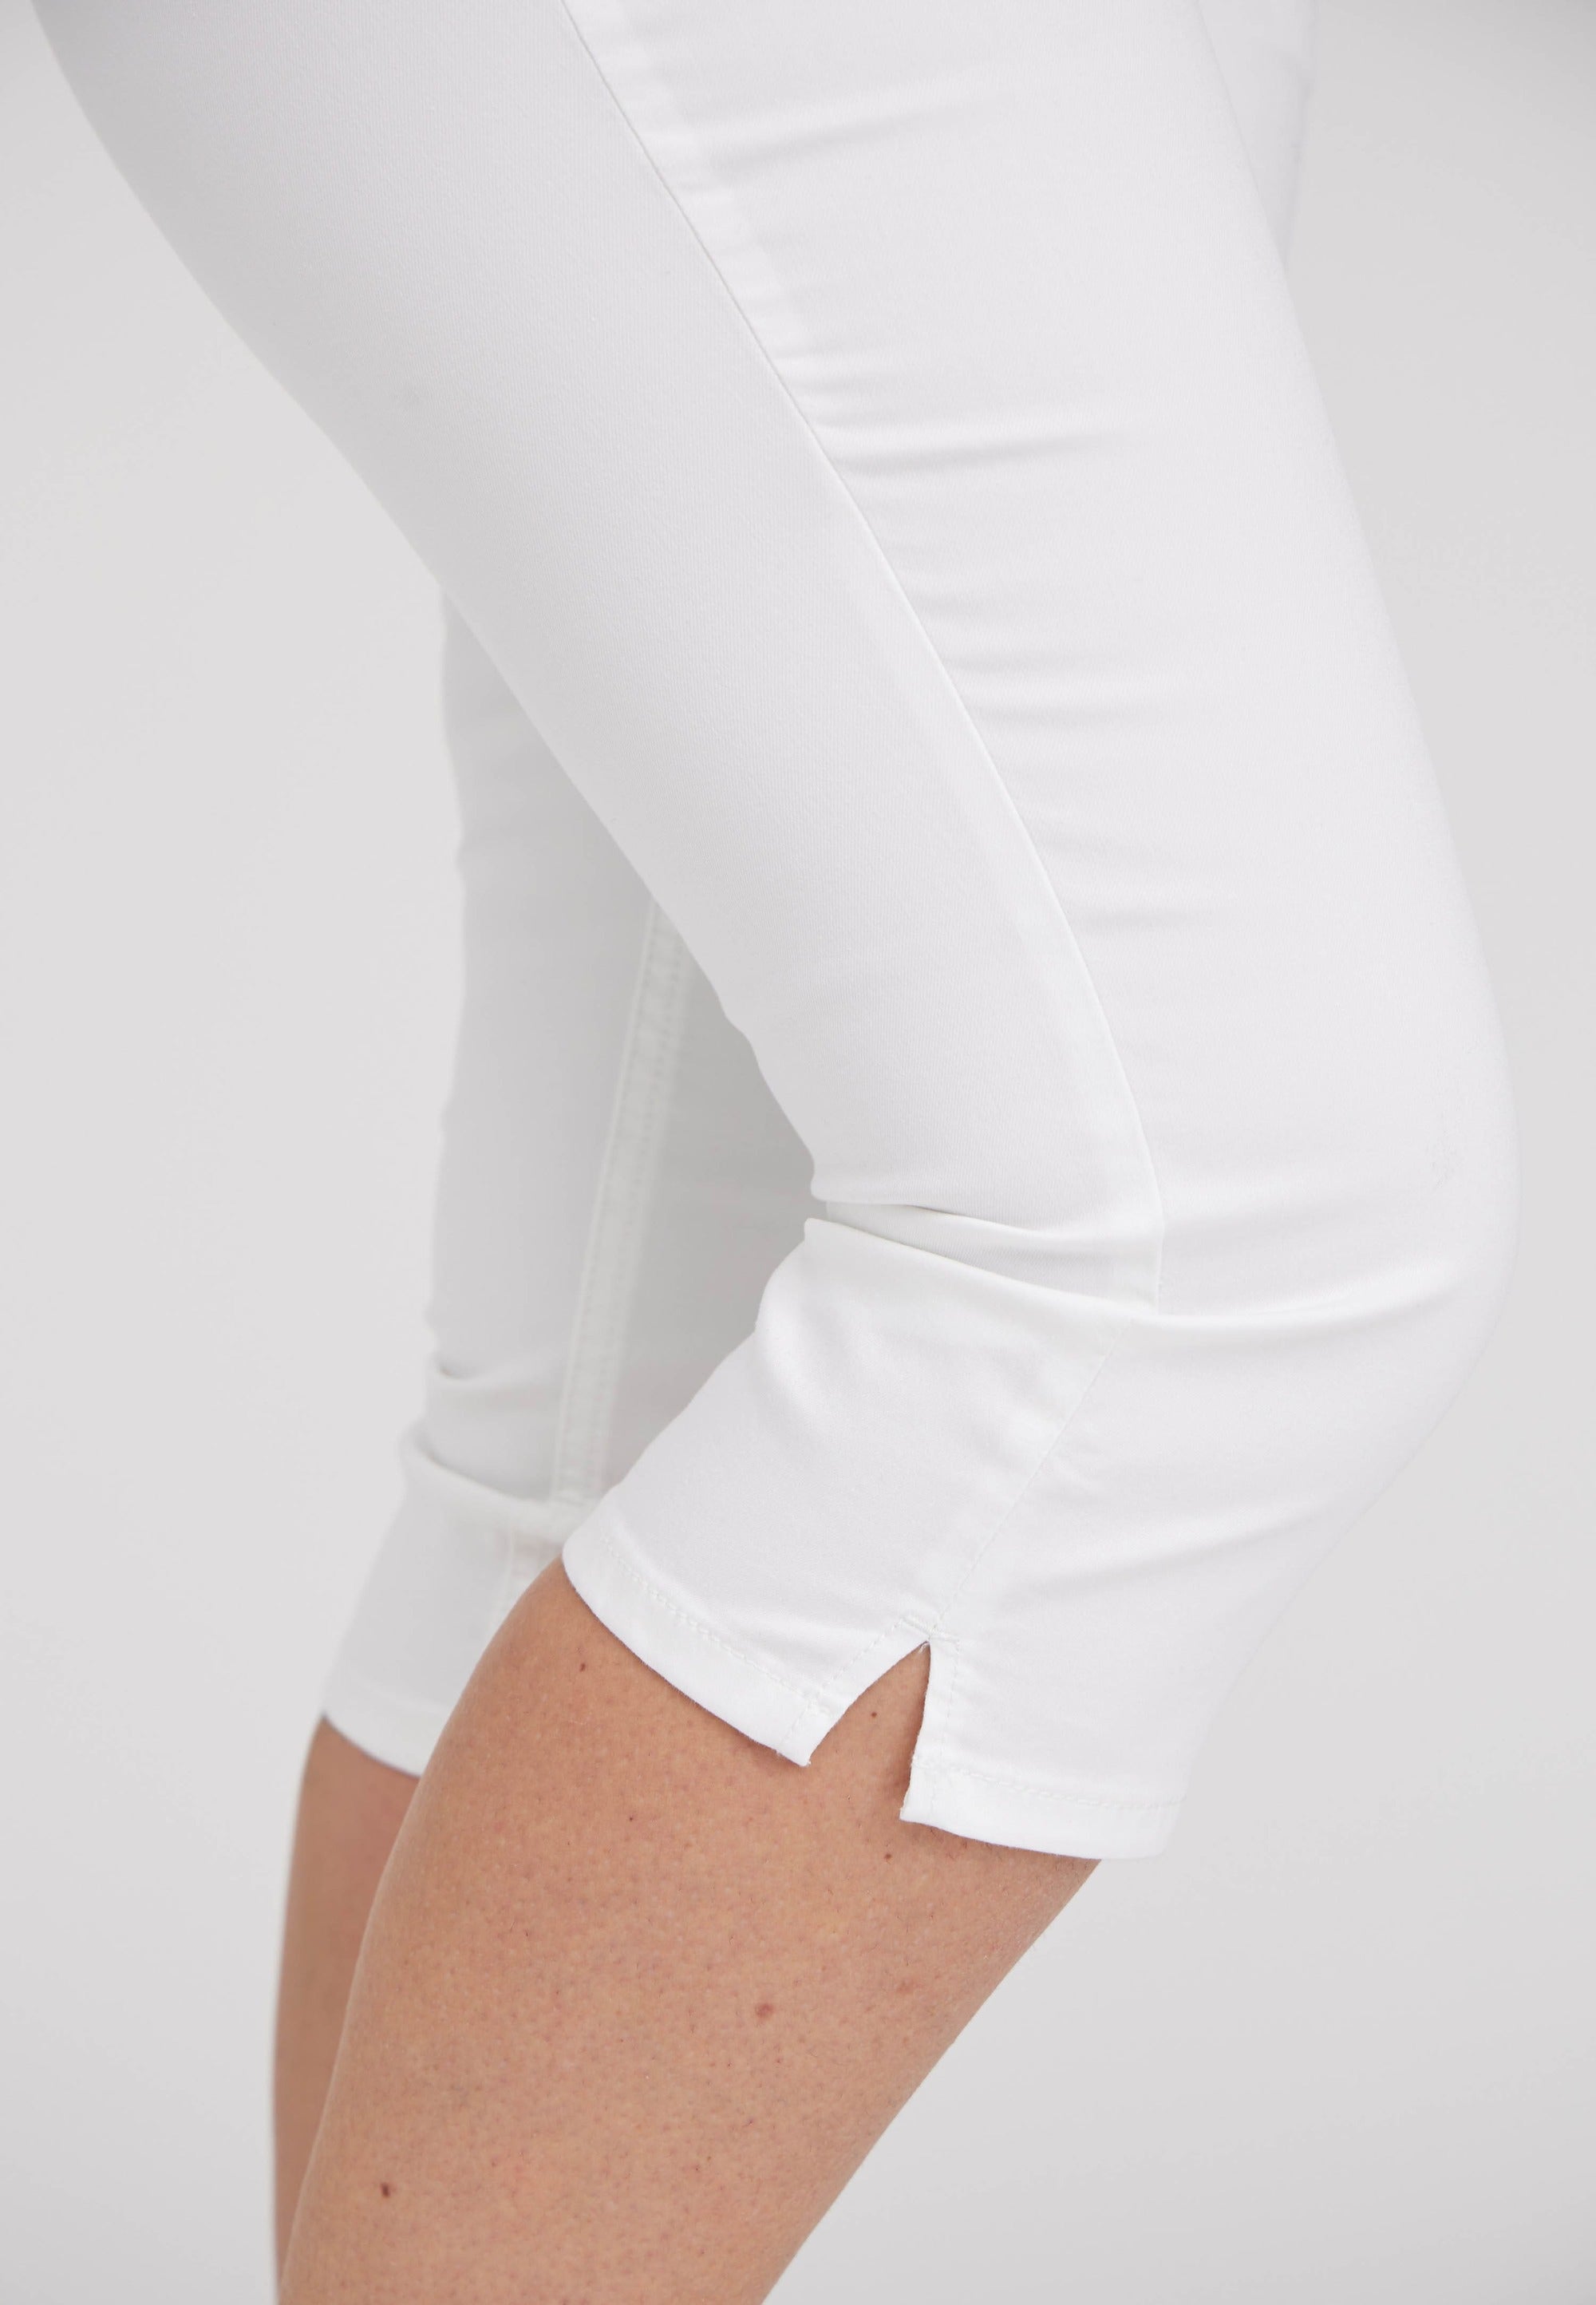 LAURIE Kelly Regular Capri Short Length Trousers REGULAR 10000 White